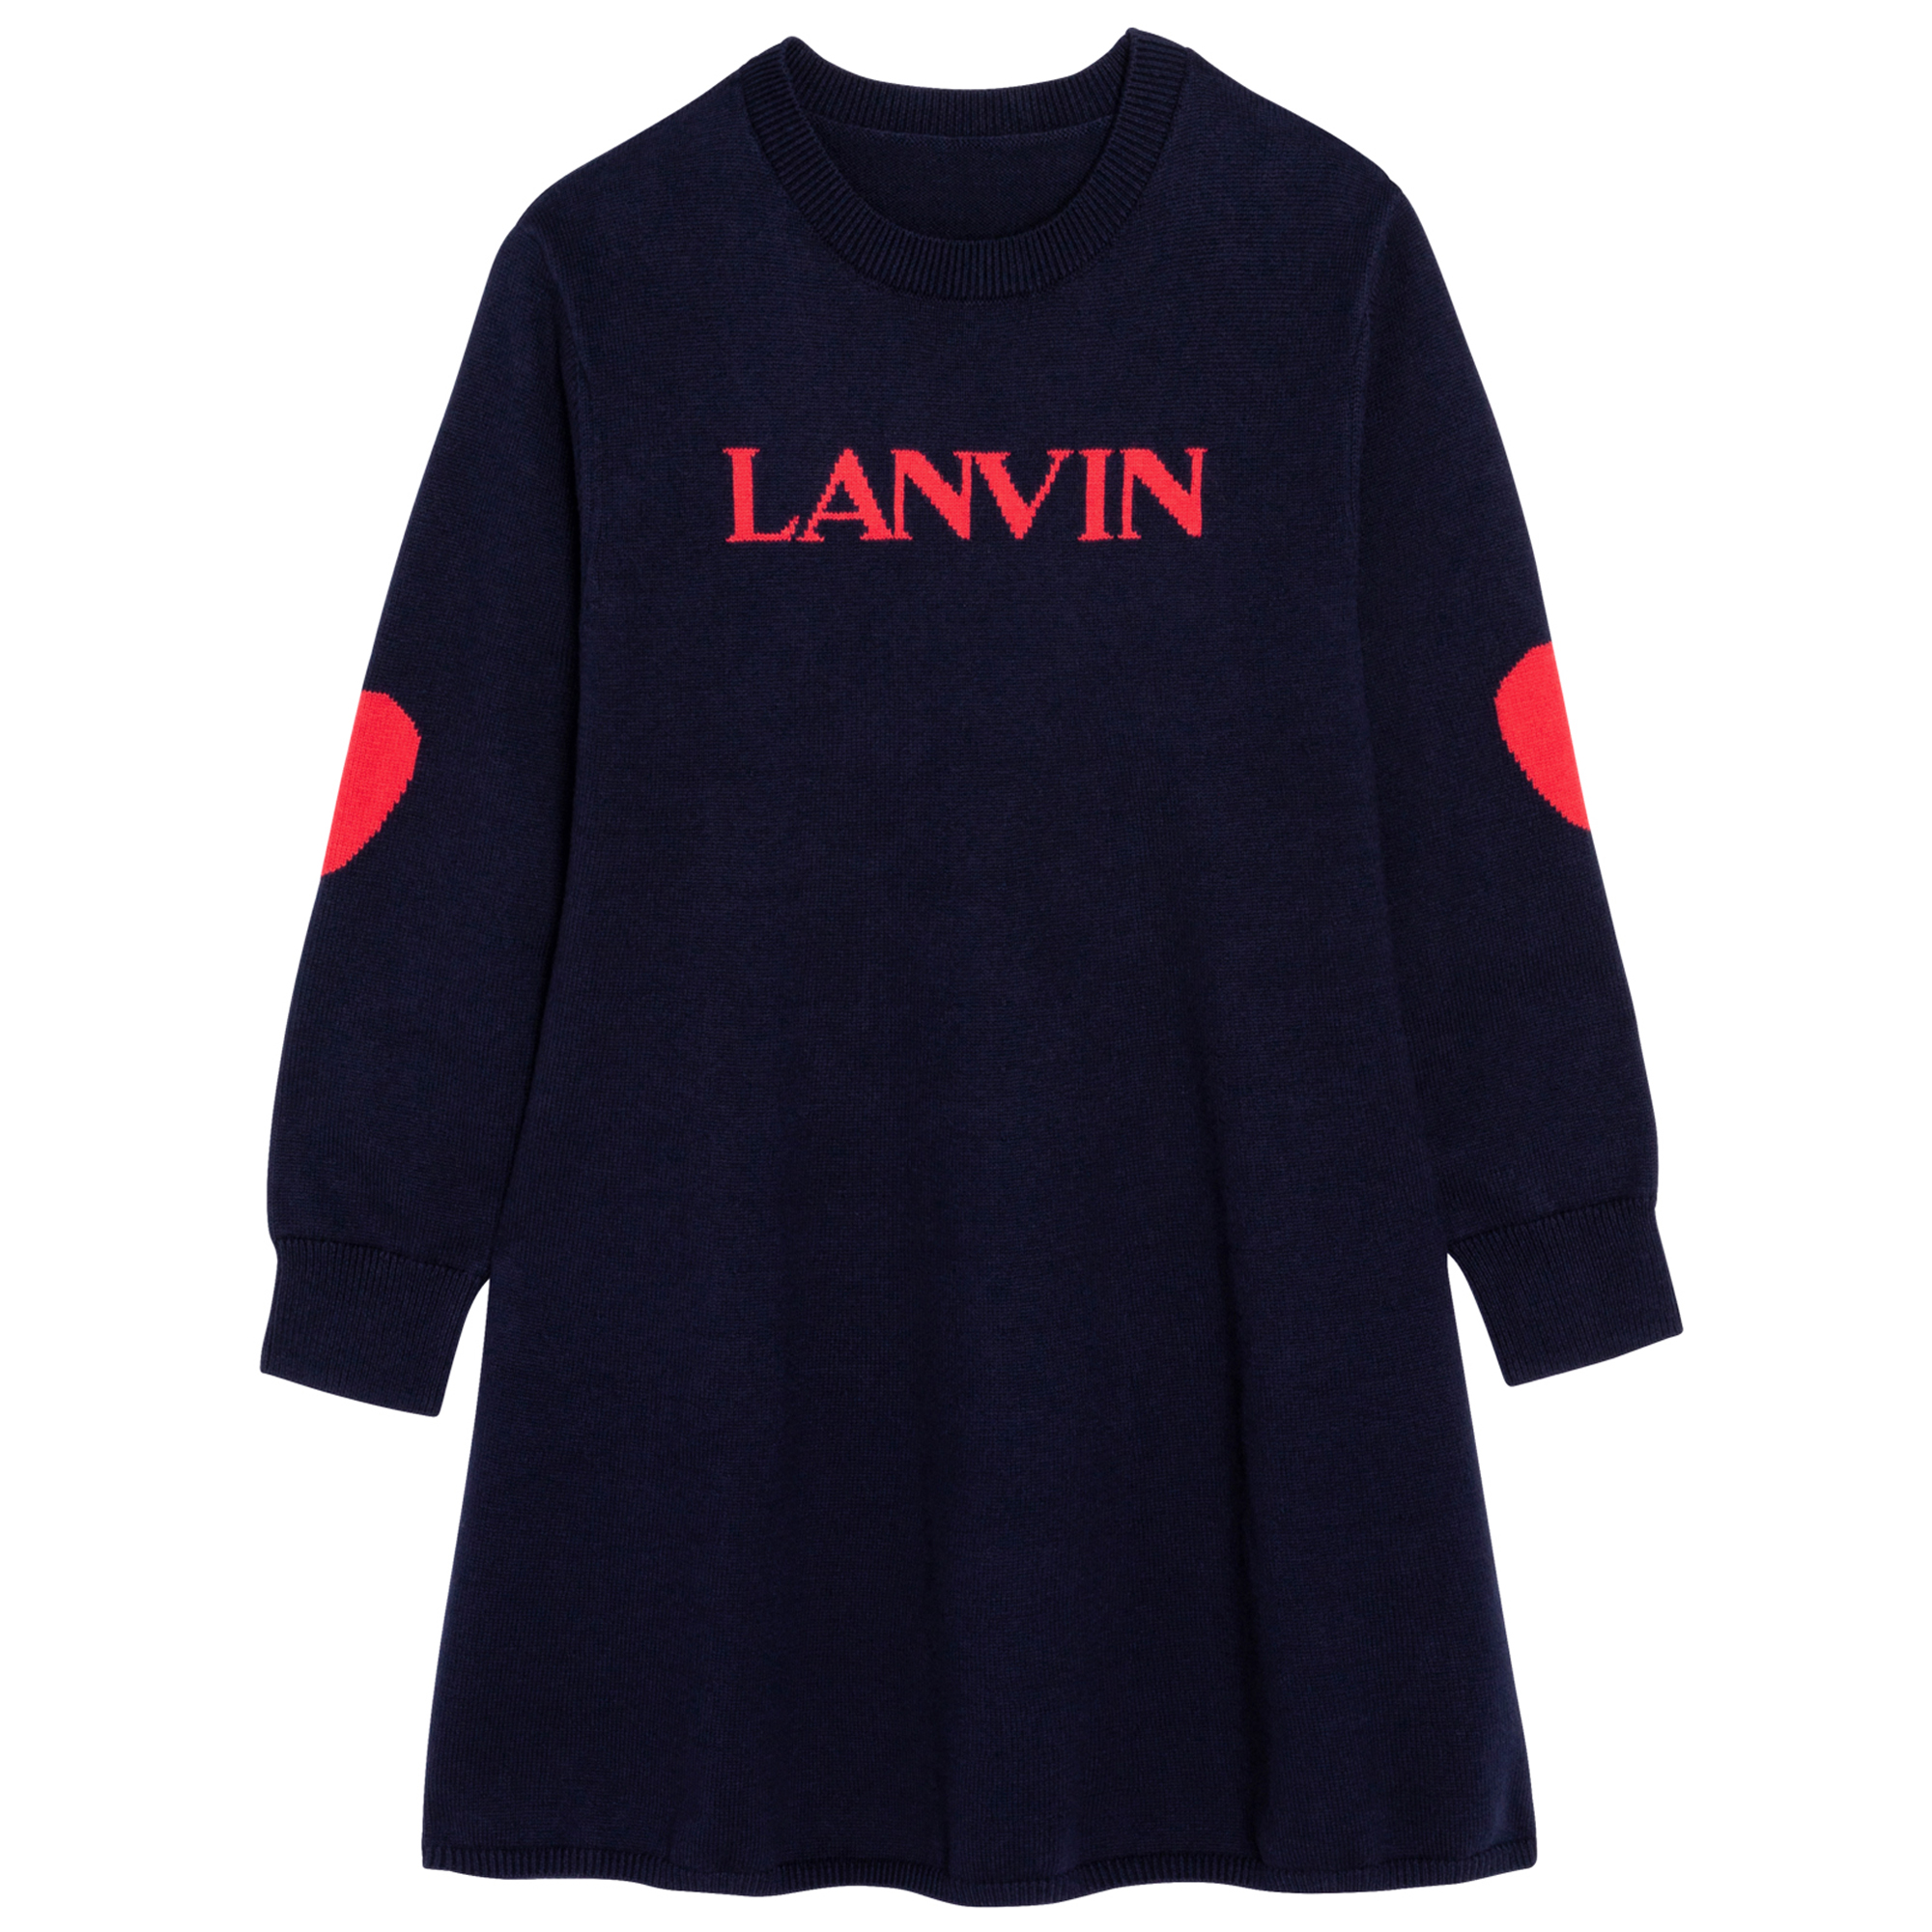 Vestito a maglia in cotone e lana LANVIN Per BAMBINA